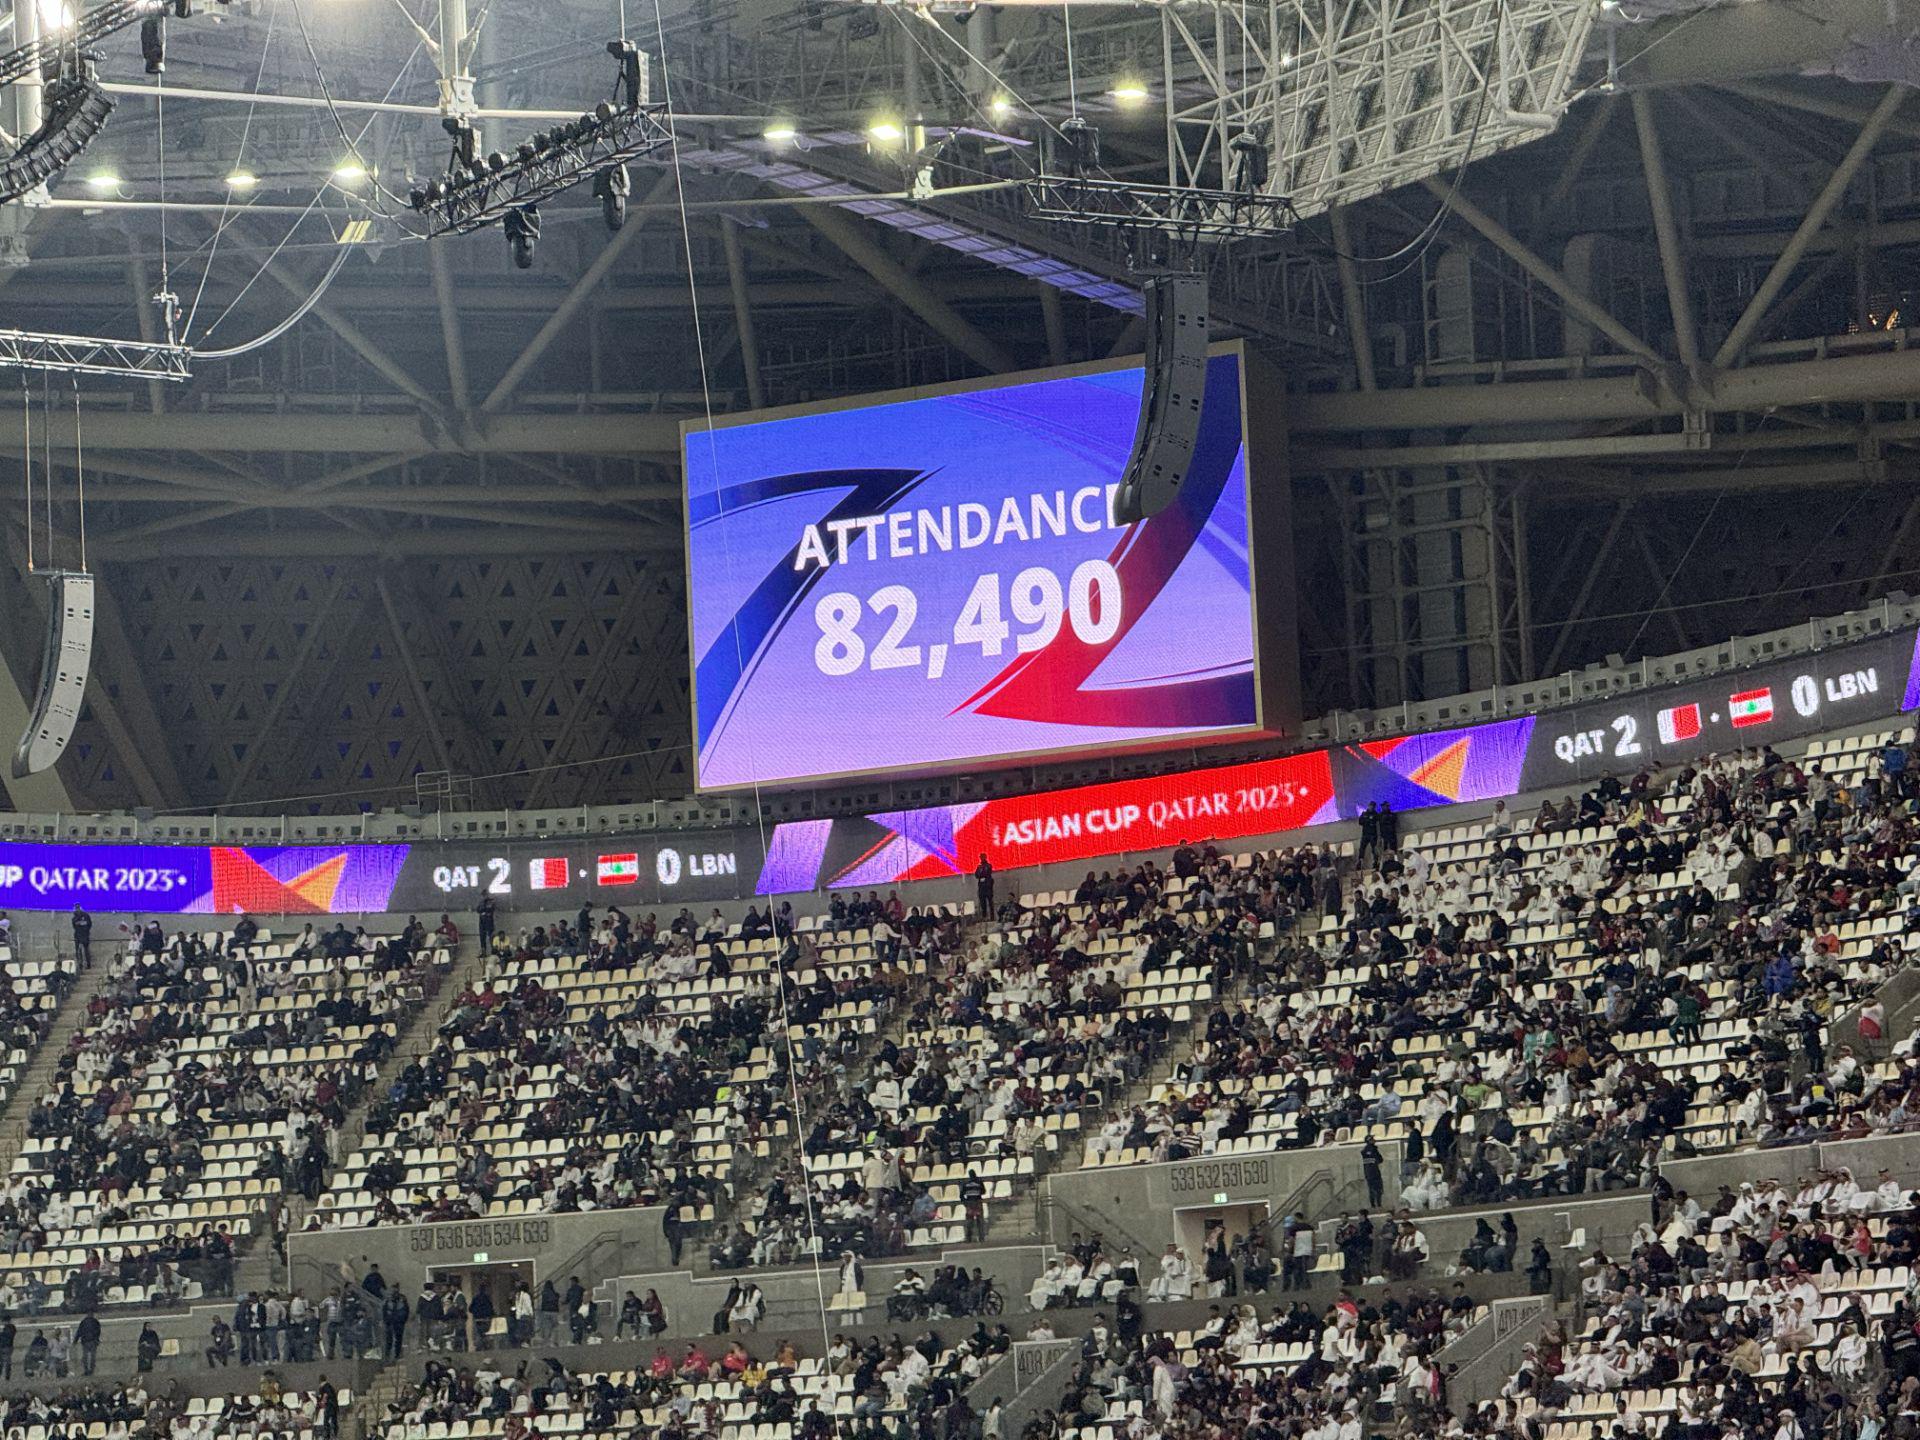 [直播吧在现场]卡塔尔亚洲杯揭幕战上座人数：82490人